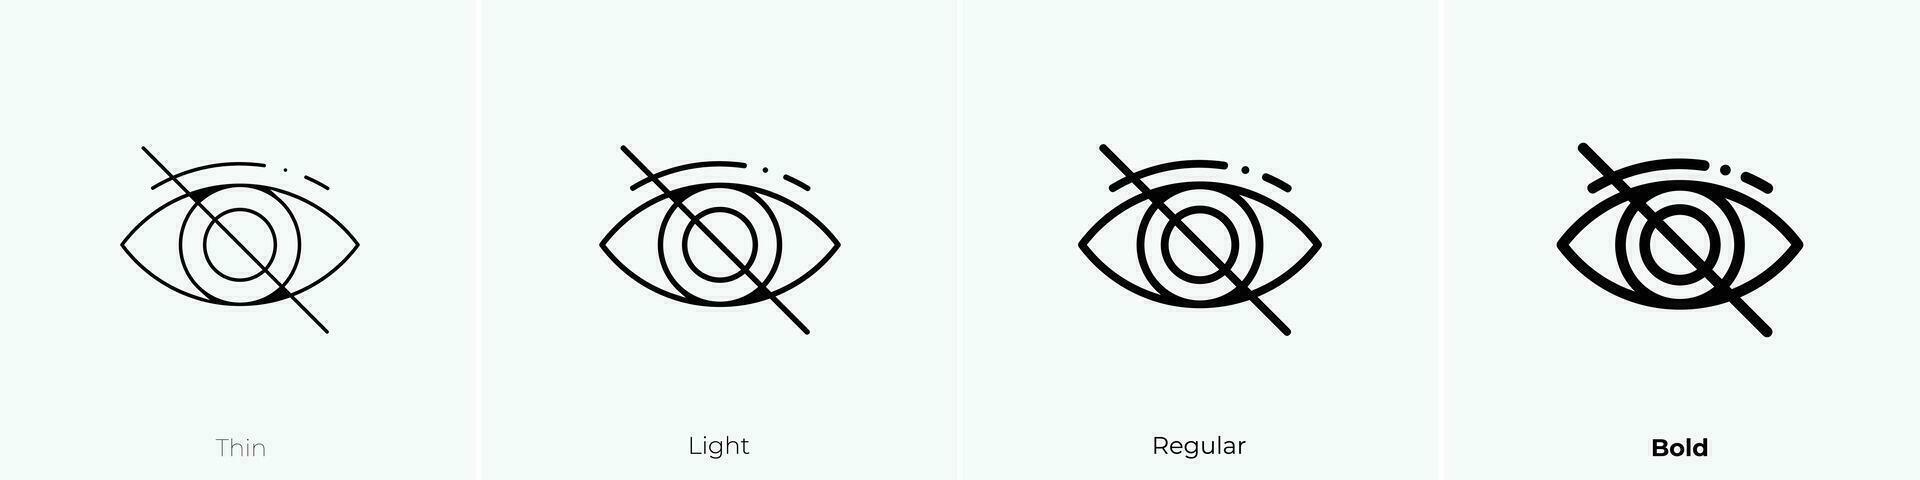 rot Auge Symbol. dünn, Licht, regulär und Fett gedruckt Stil Design isoliert auf Weiß Hintergrund vektor